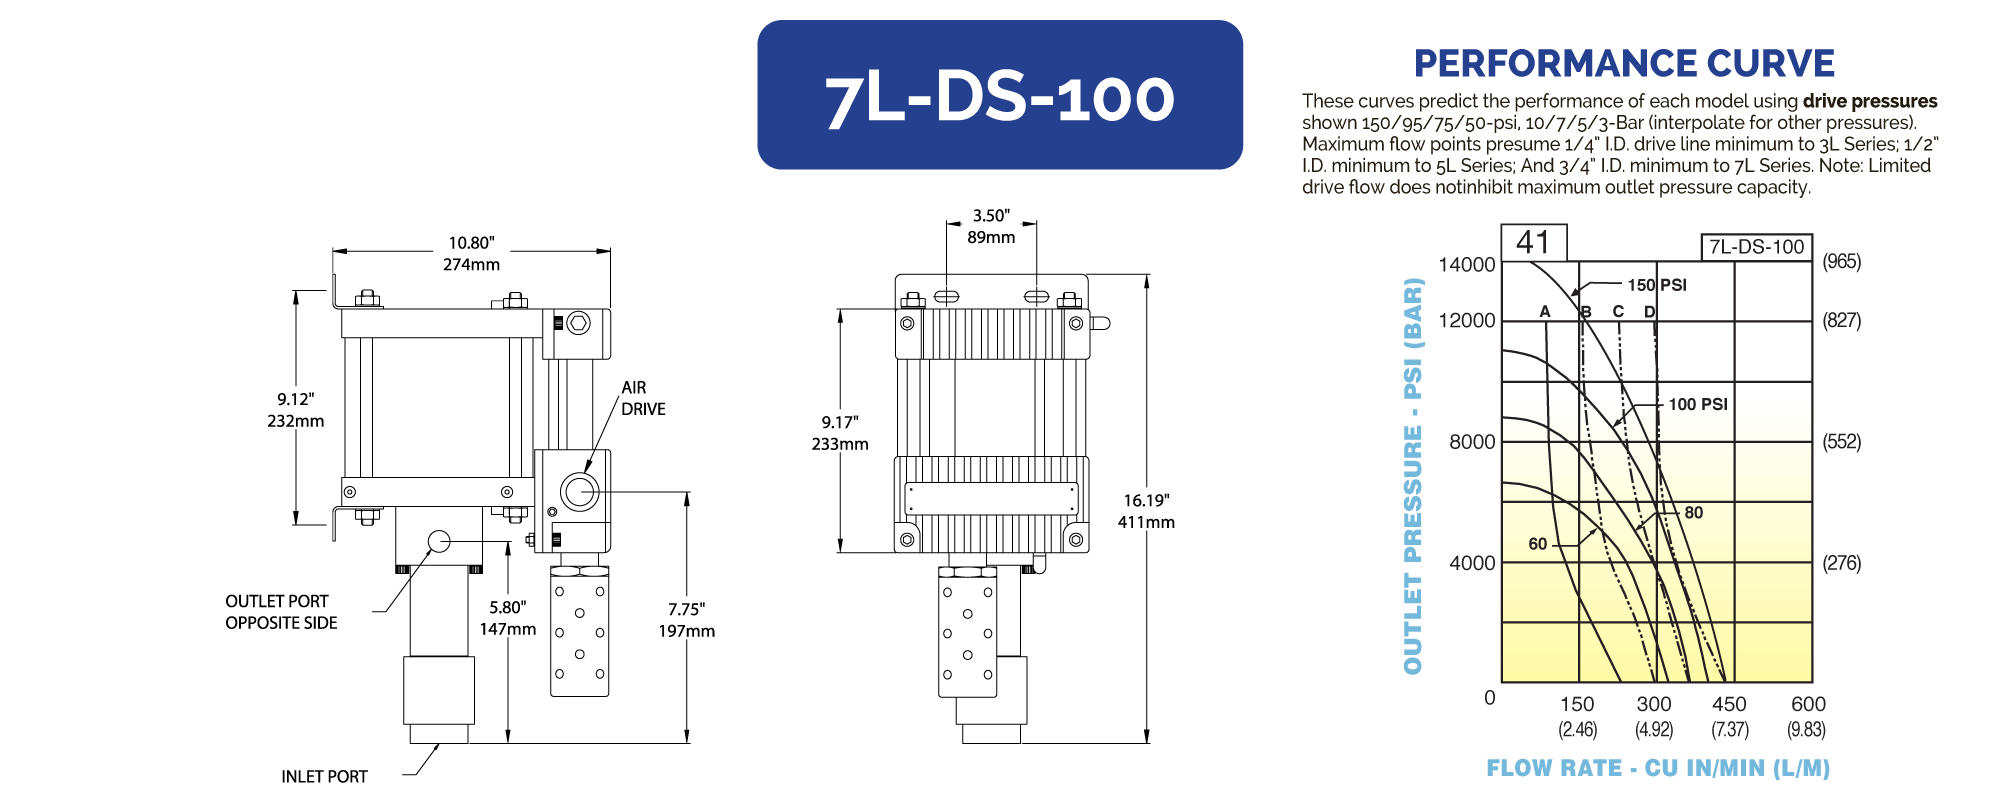 7L-DS-100